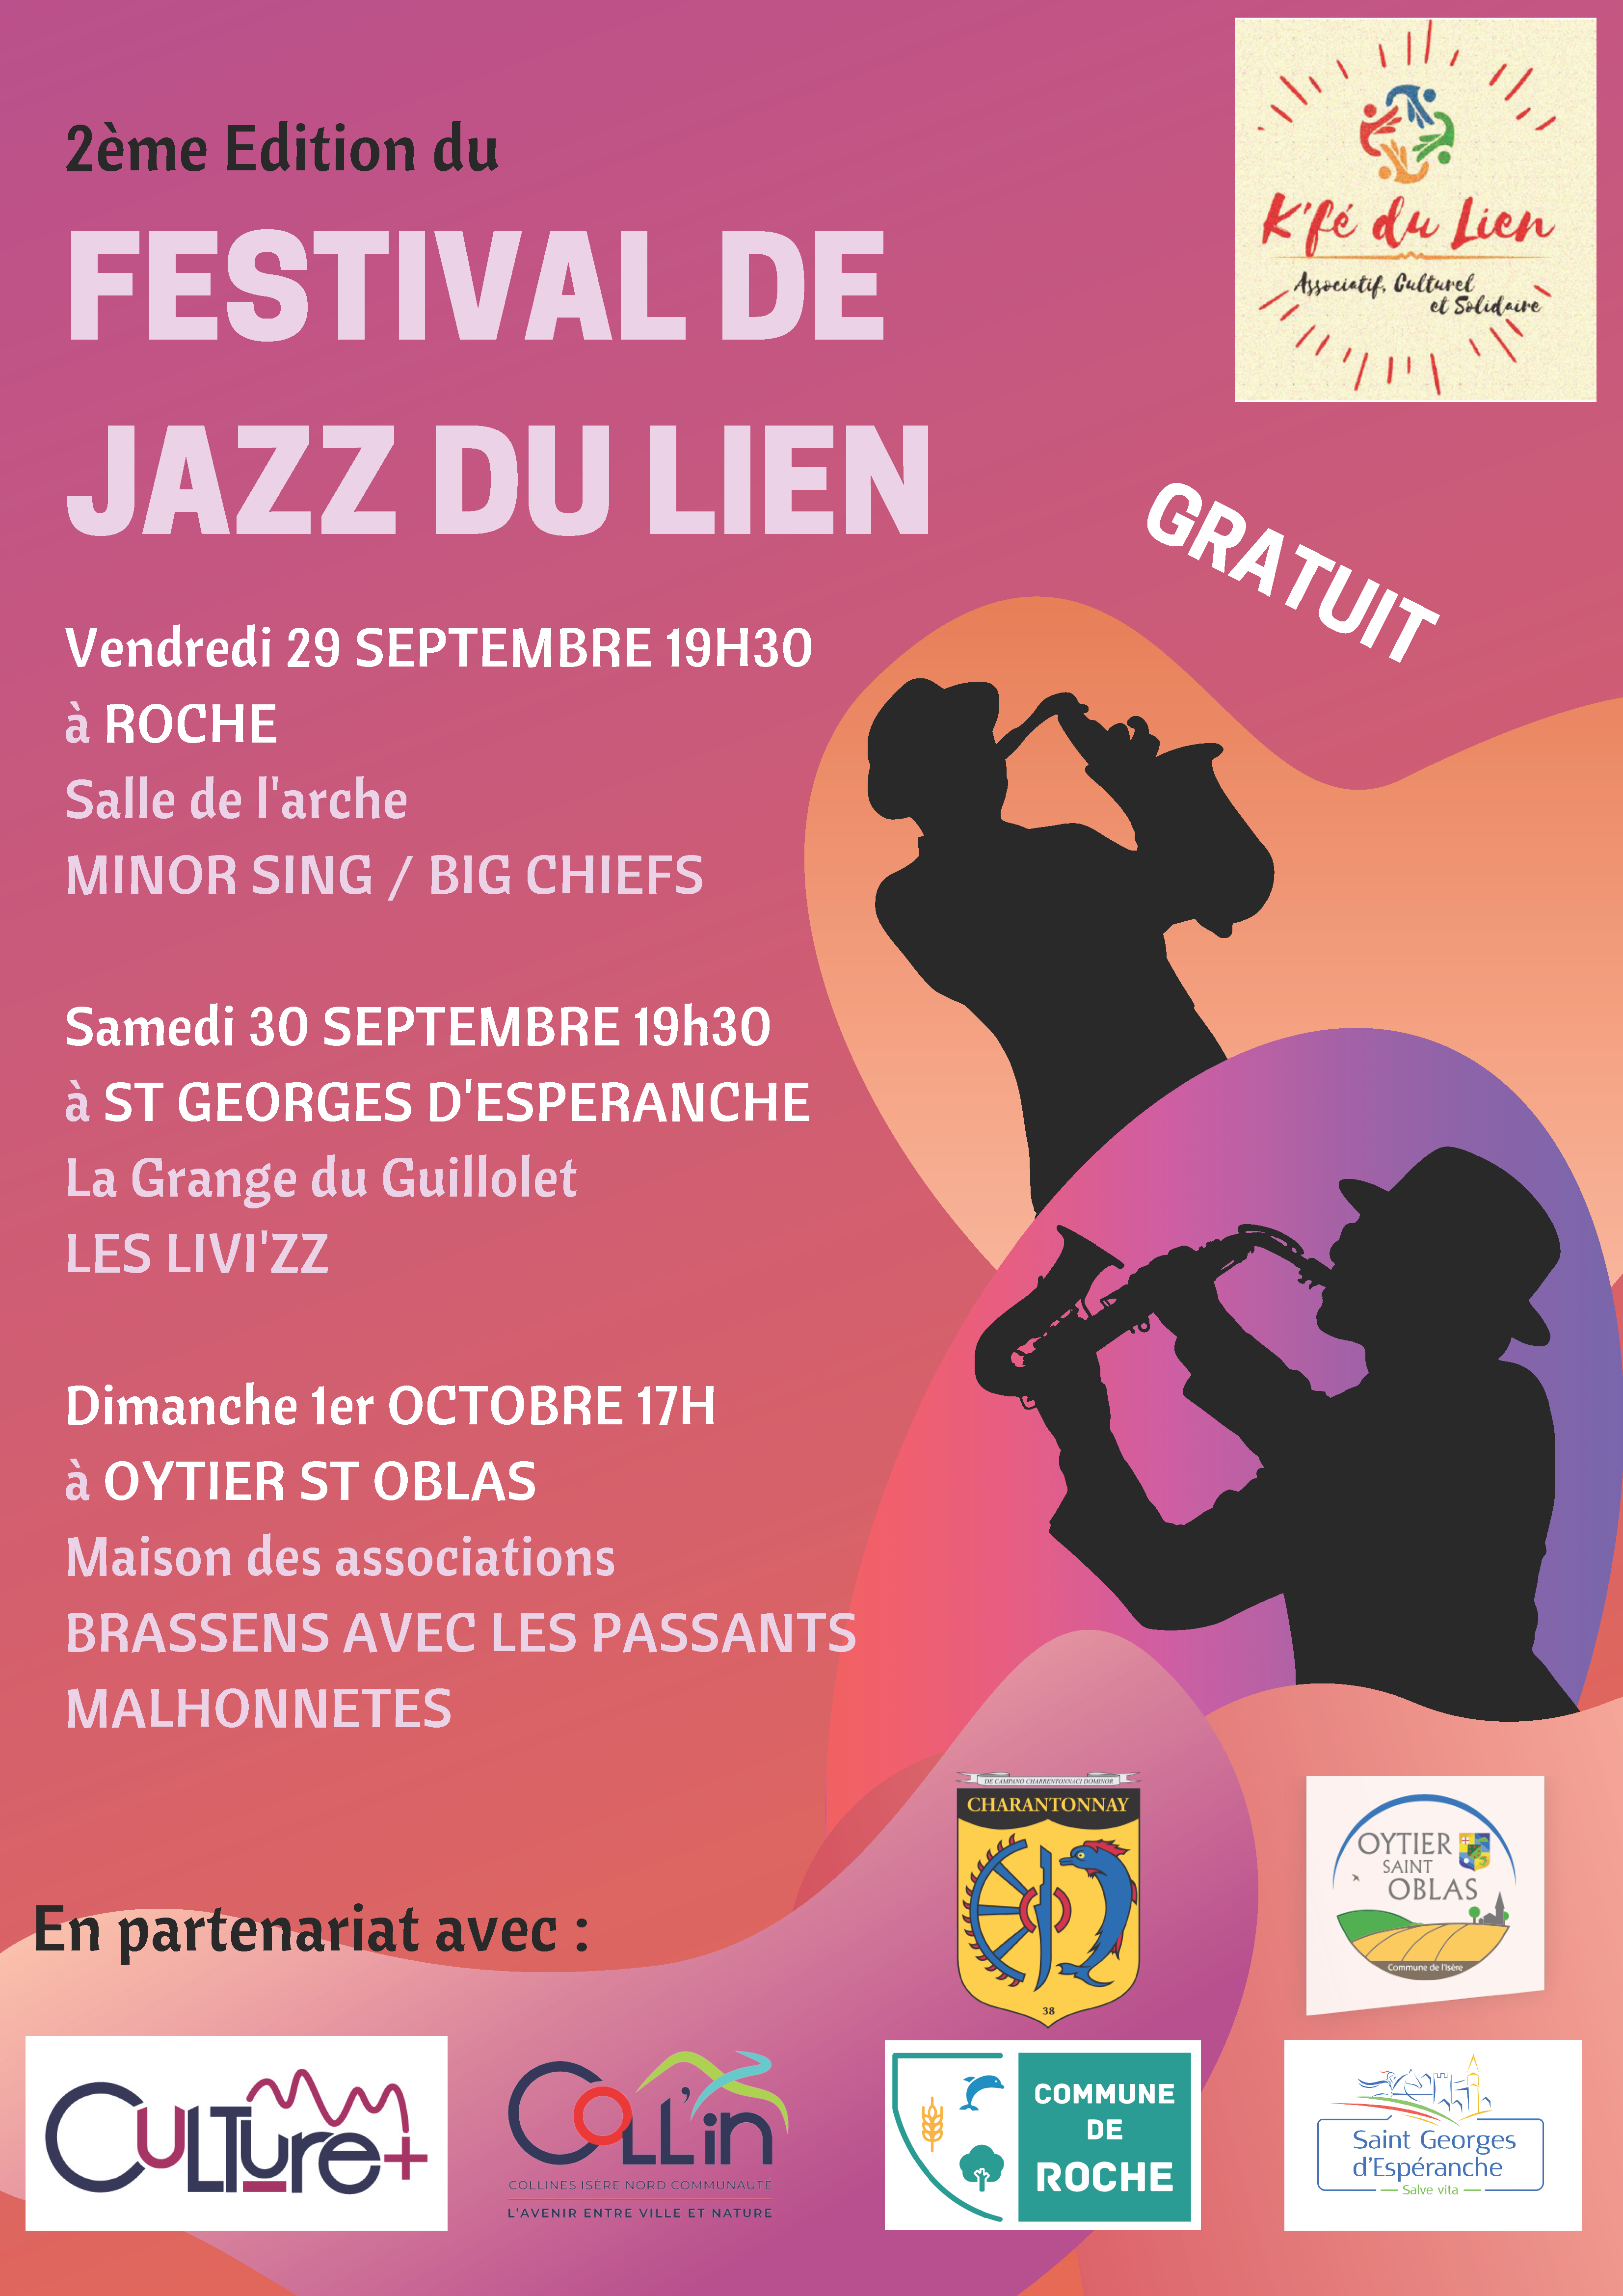 Image de Festival de Jazz du Lien